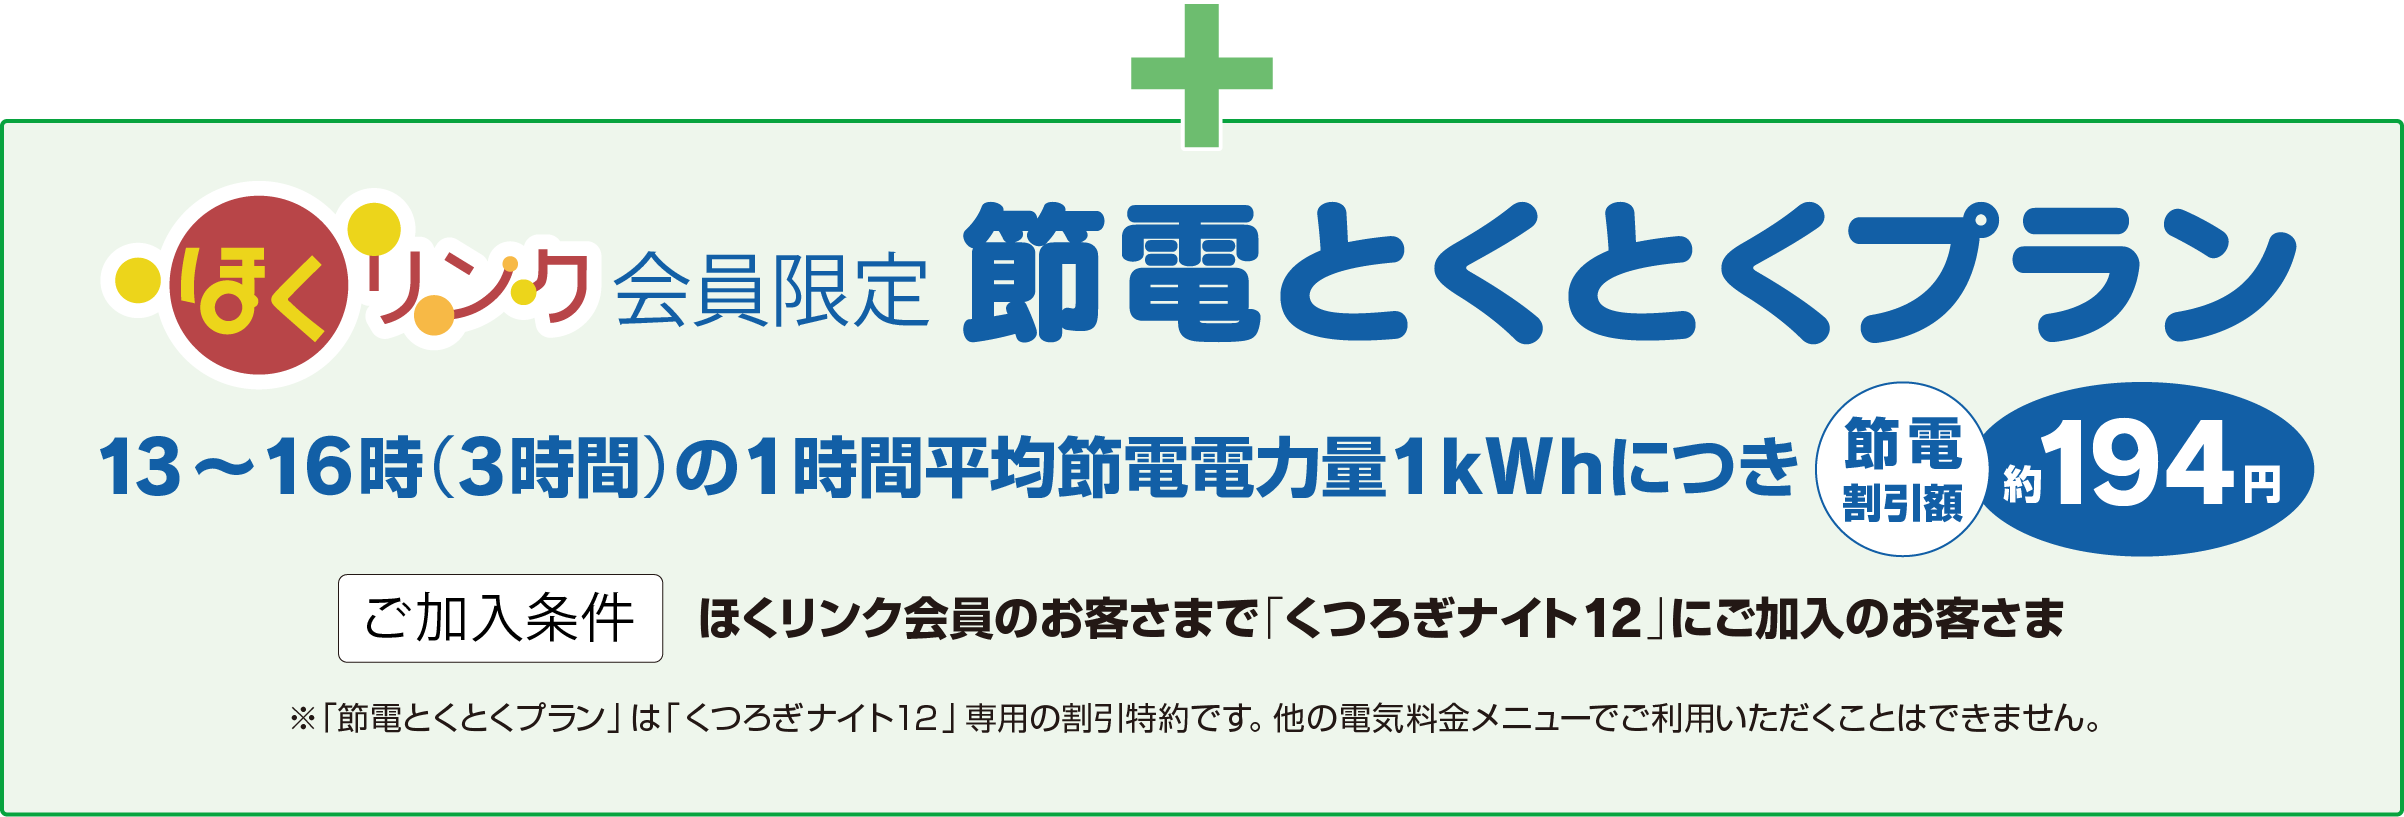 節電とくとくプラン　13〜16時（3時間）の1時間平均節電電力量1kWhにつき、節電割引額約194円